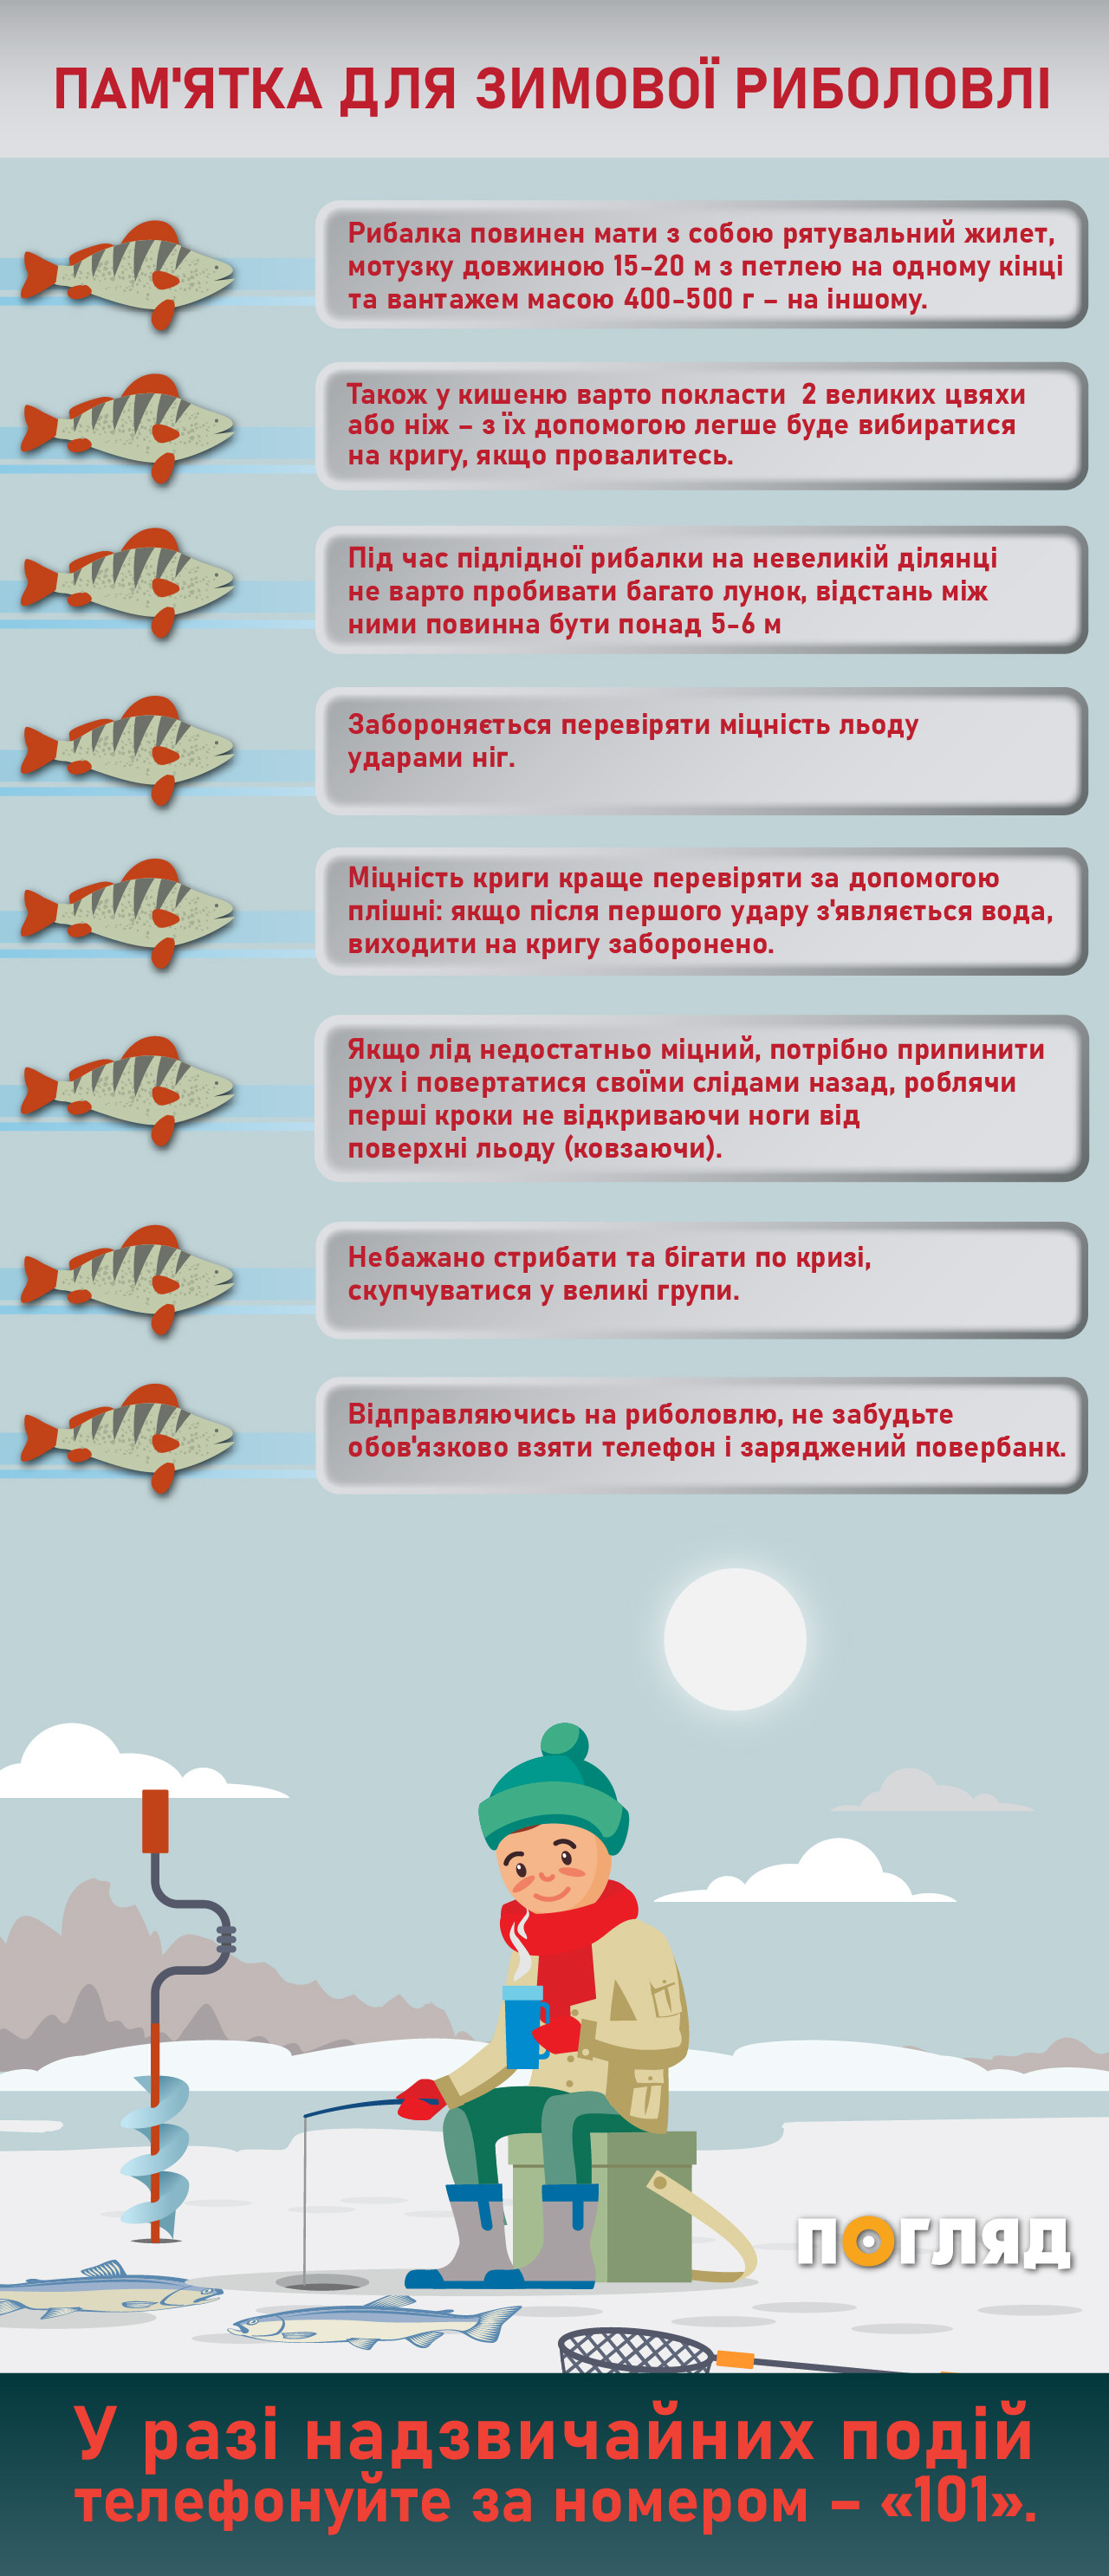 Зимова риболовля: правила поведінки (інфографіка) - зображення